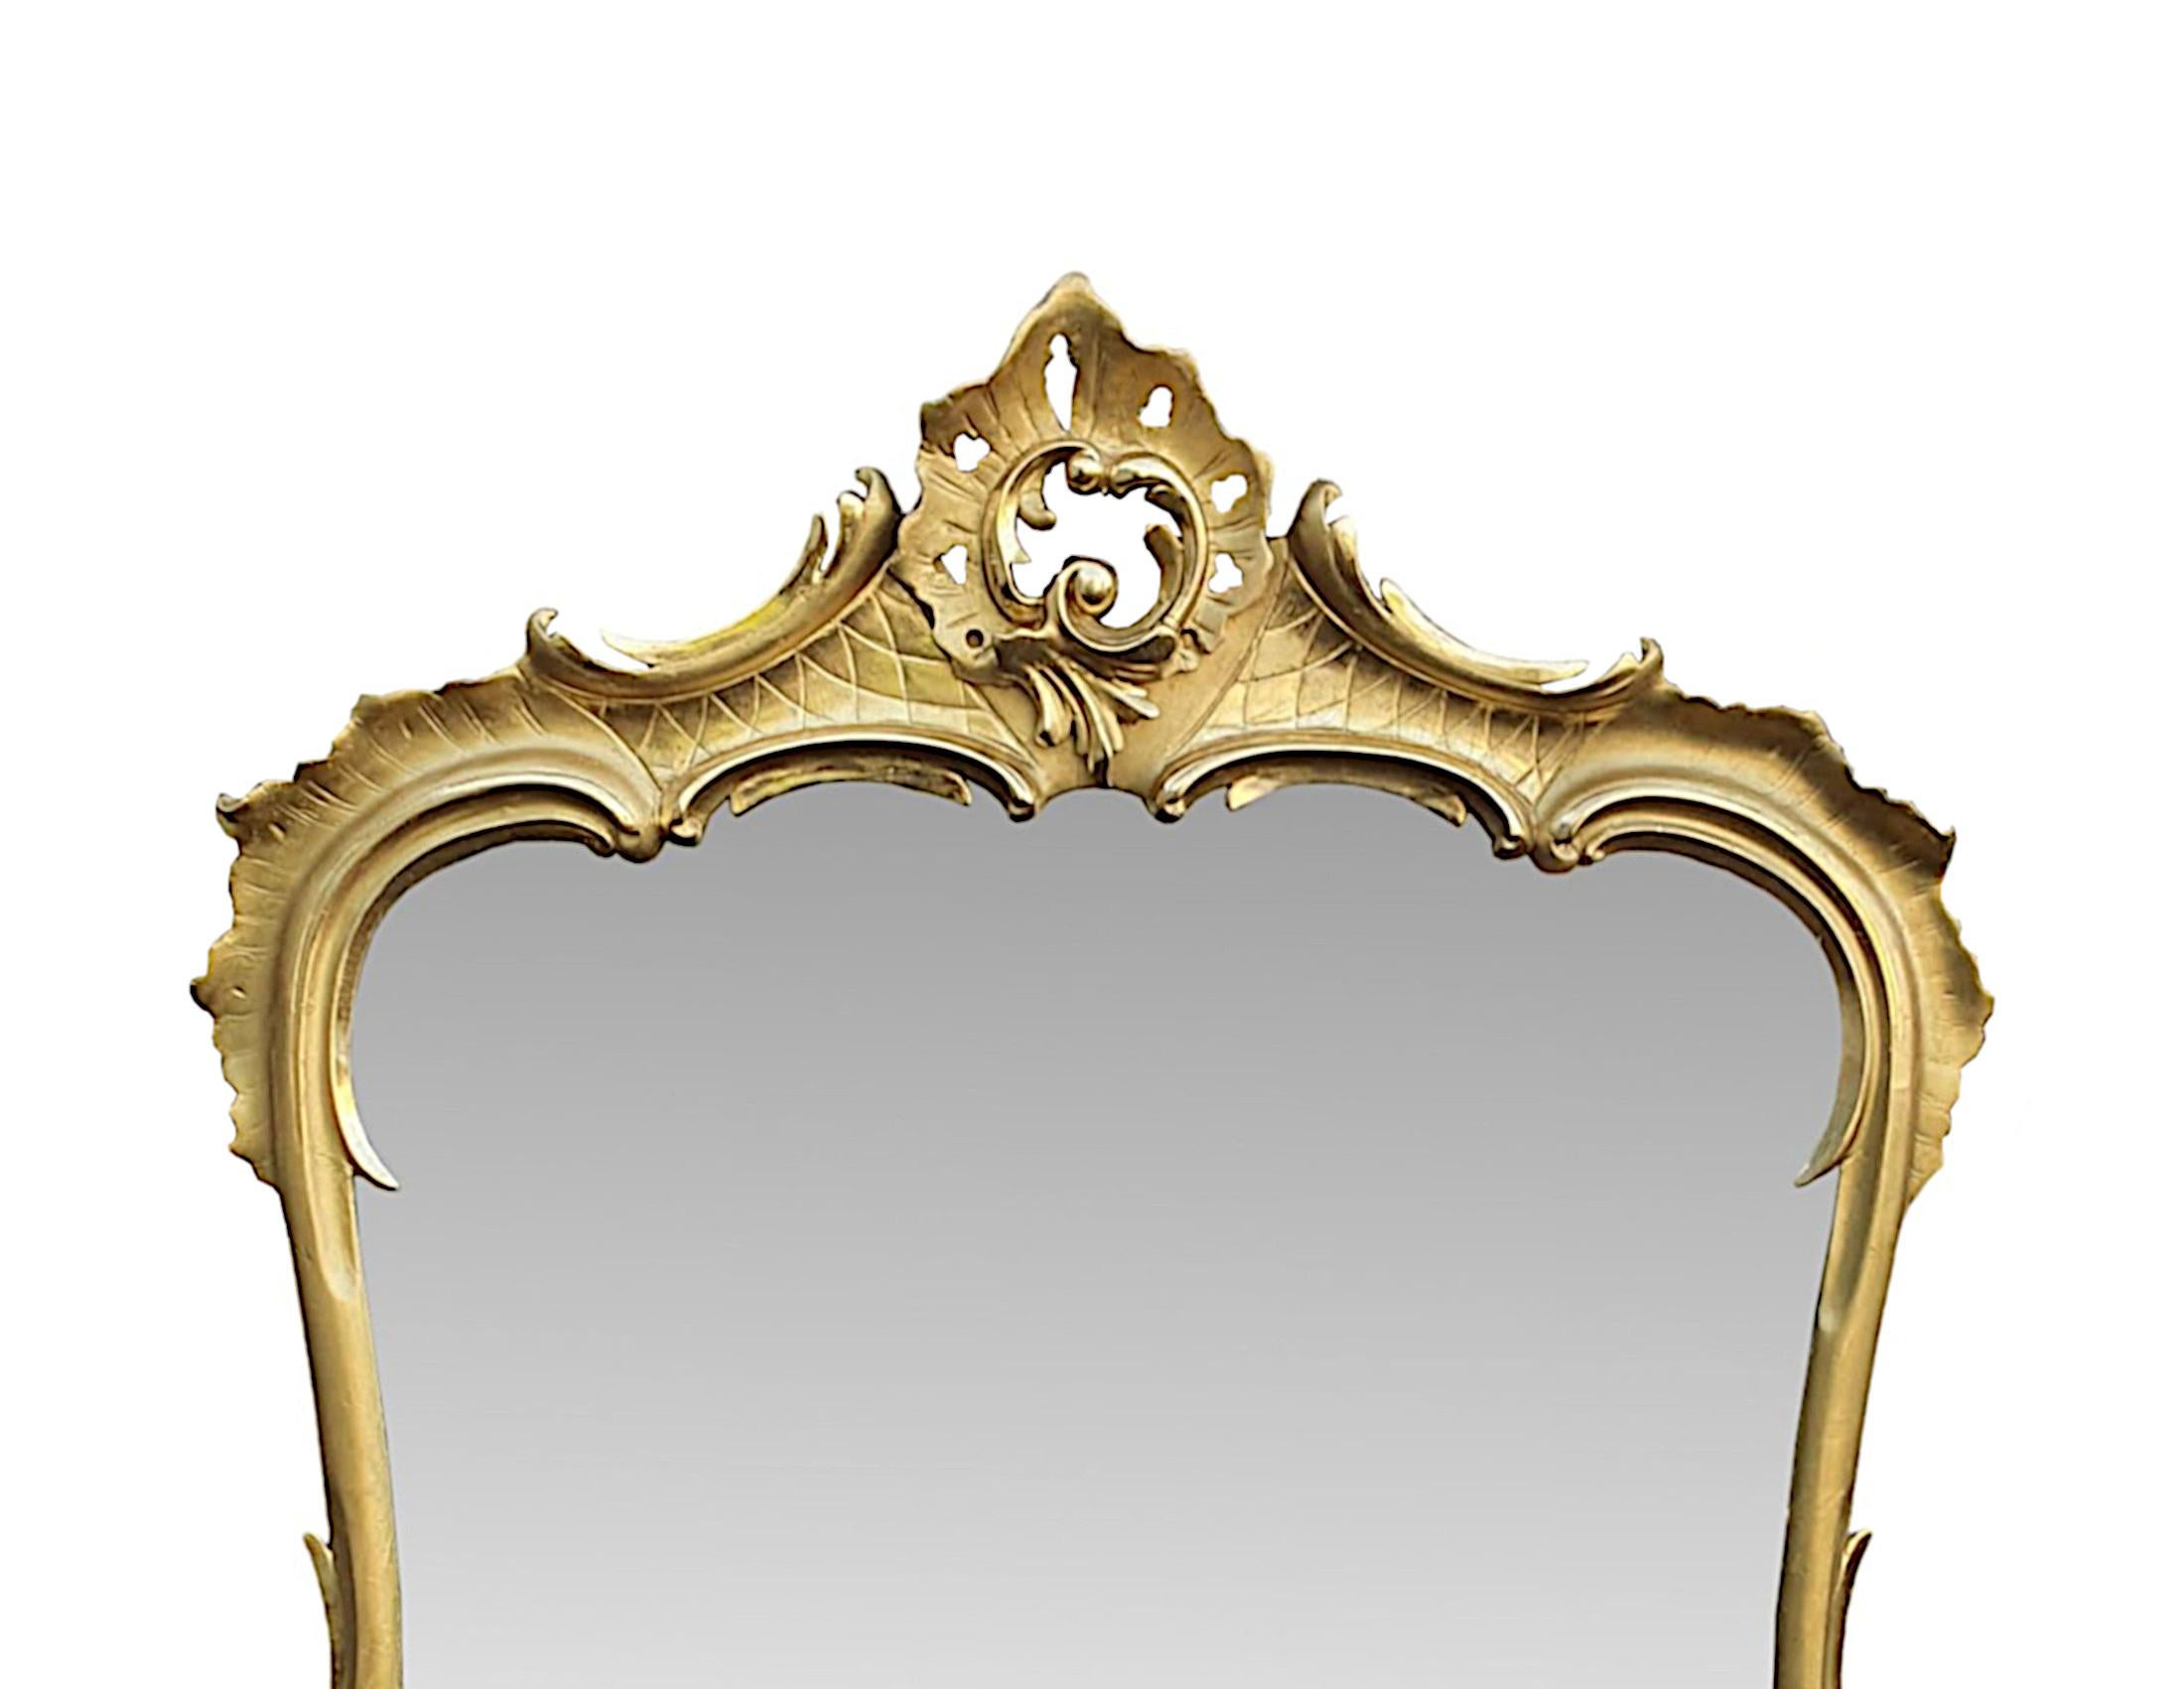 Eine hervorragende 19. Jahrhundert vergoldet overmantle Spiegel von großen Proportionen. Die originale Quecksilberglasplatte mit einigen Sprenkeln ist in einen formschönen, rechteckigen Rahmen aus vergoldetem Holz gefasst. Der fein handgeschnitzte,